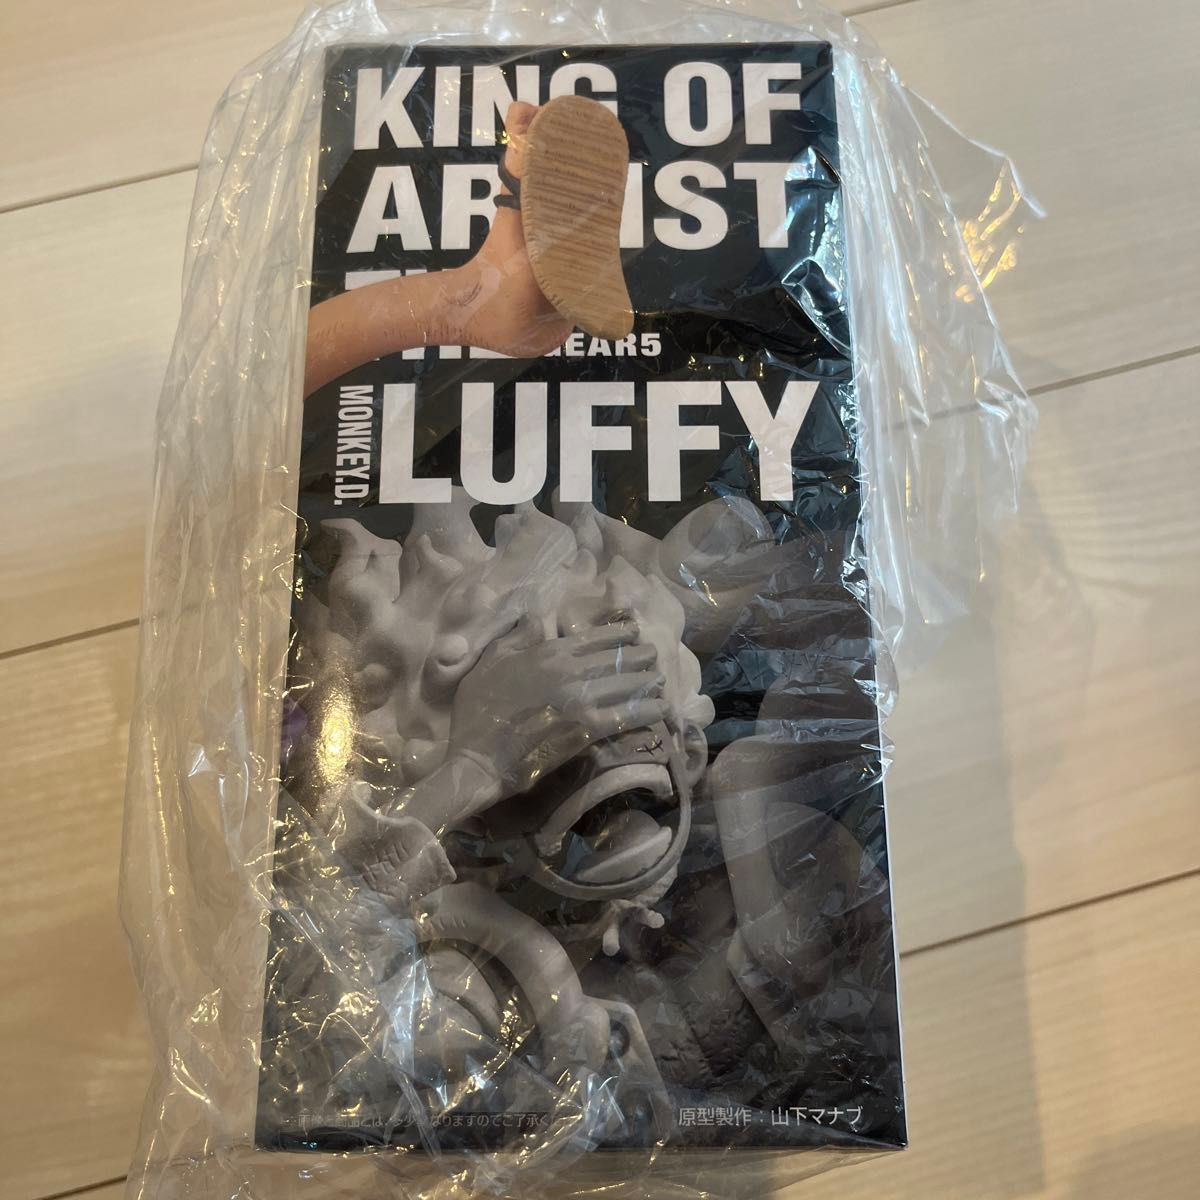 ワンピース KING OF ARTIST THE モンキー・D・ルフィGEAR5 1箱